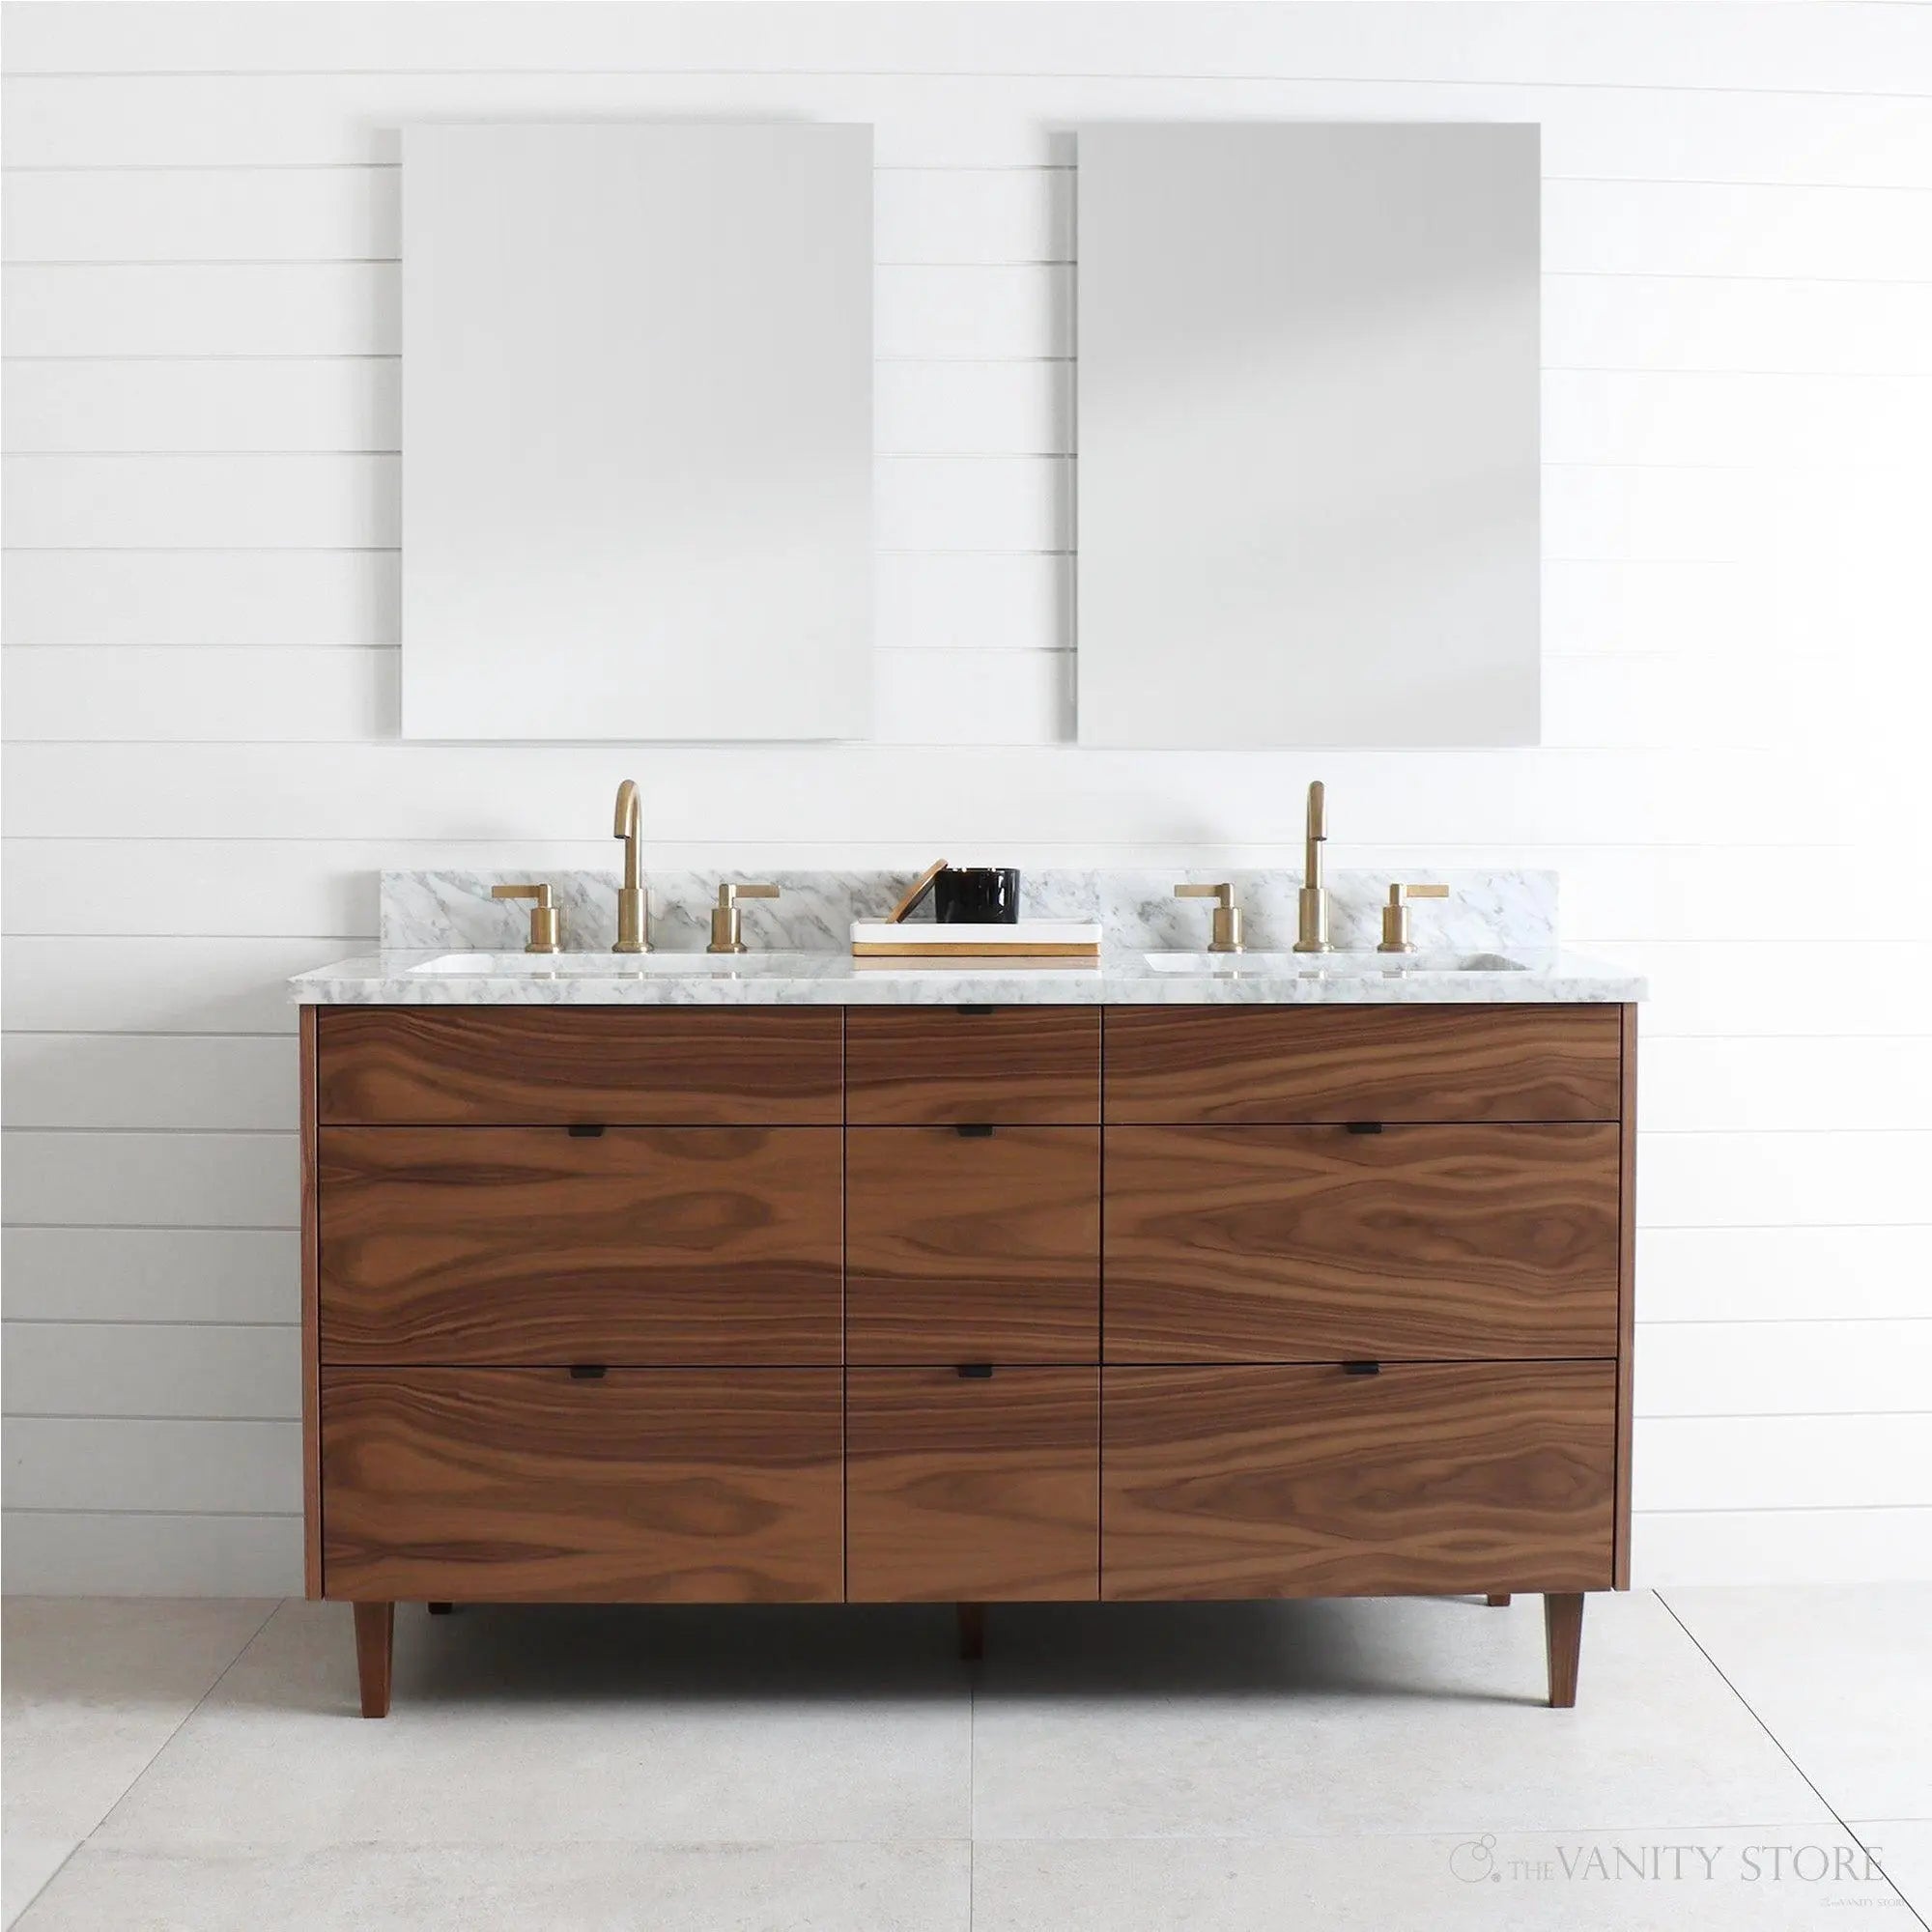 Asher 60" American Black Walnut Bathroom Vanity, Double Sink - Teodor Vanities United States